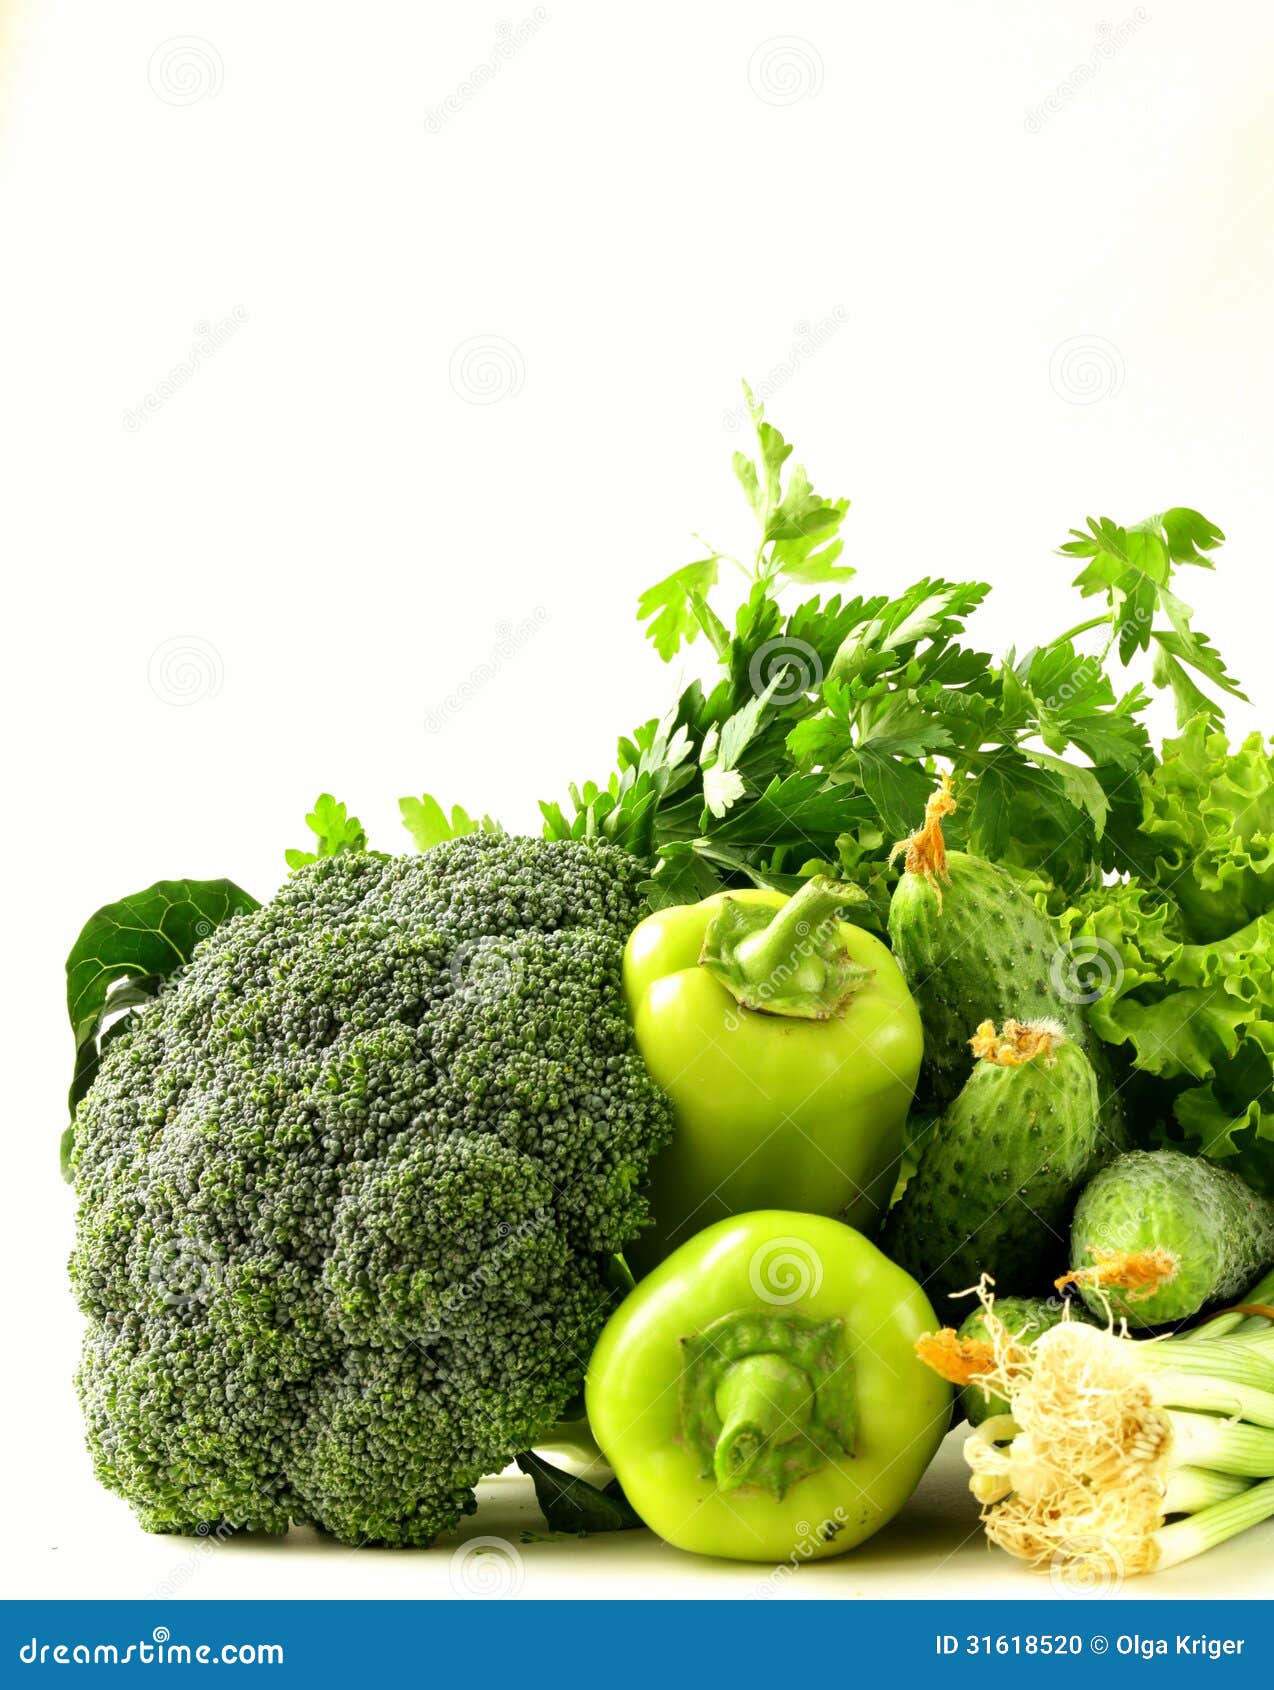 新鲜绿色蔬菜图片大全-新鲜绿色蔬菜高清图片下载-觅知网